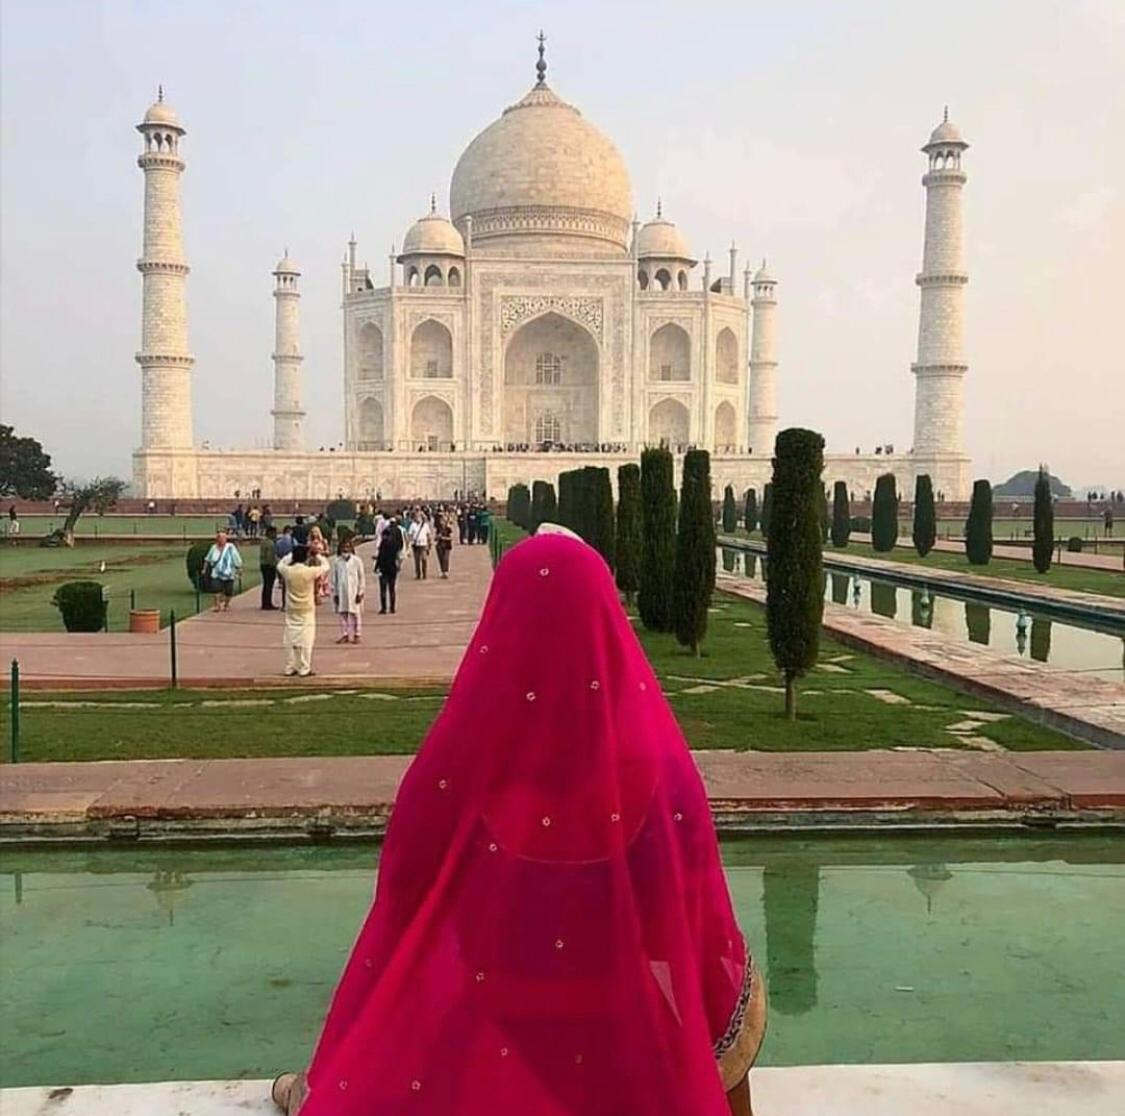 Taj Mahal - Royal Rajasthan tour packages from Delhi by car and driver | Forfaits touristiques du Royal Rajasthan au départ de Delhi en voiture et chauffeur